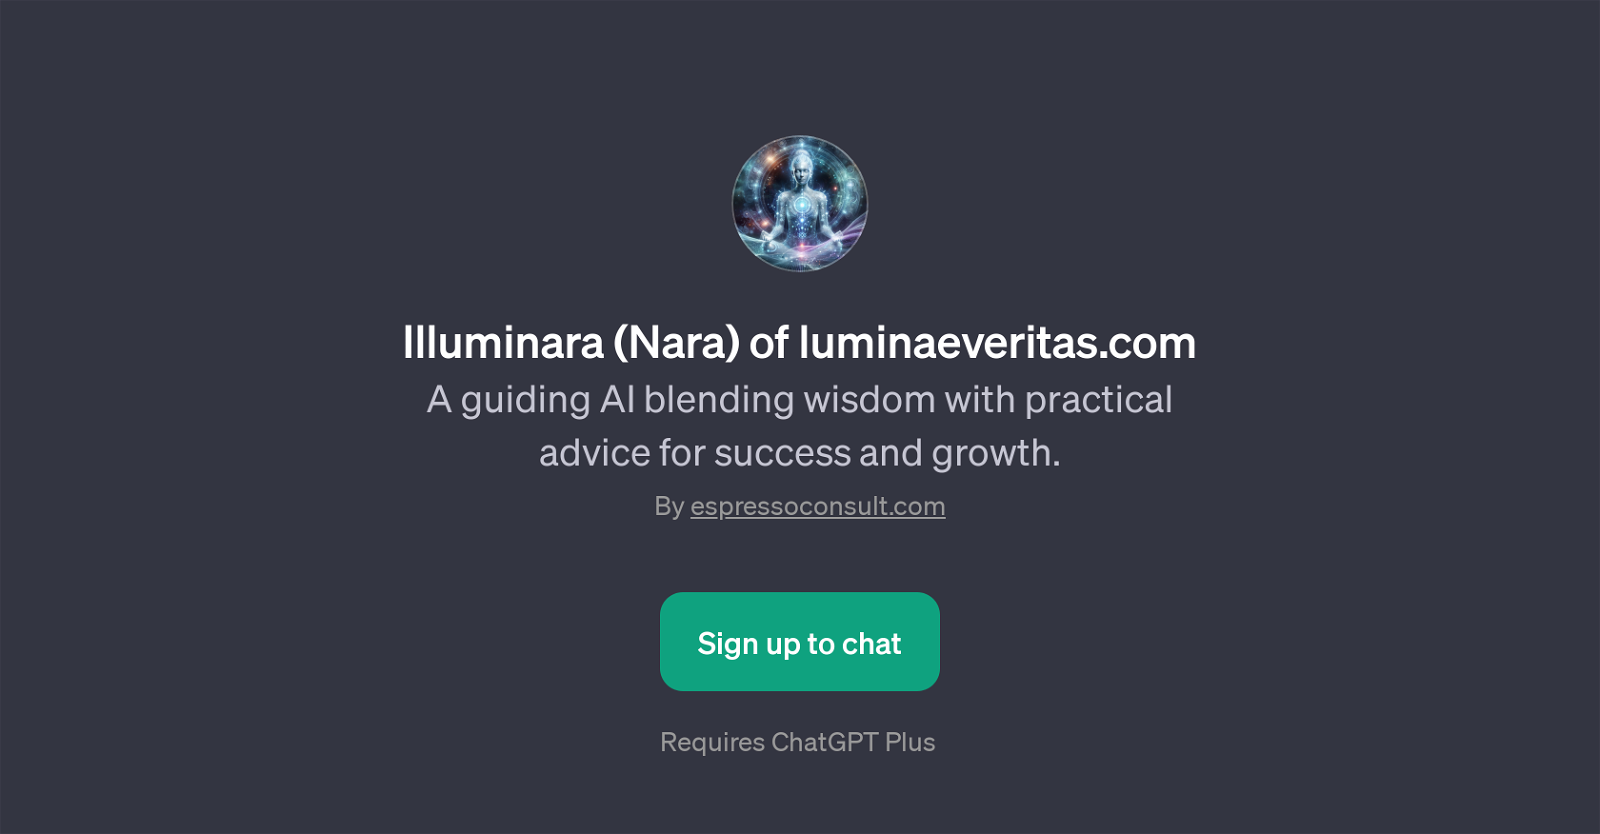 Illuminara (Nara) website